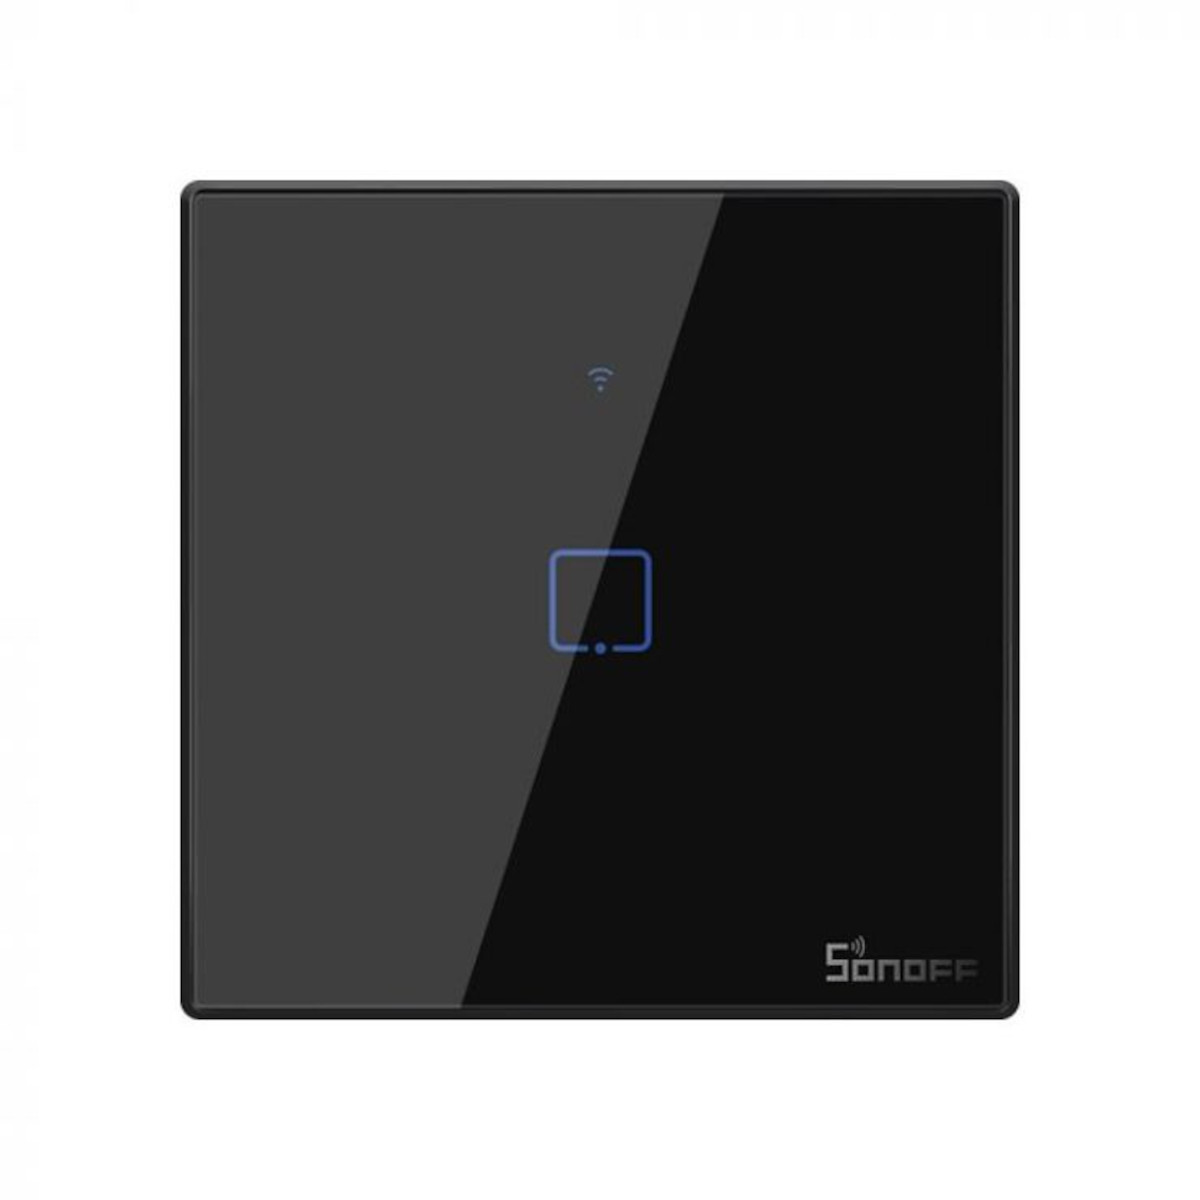 SONOFF WiFi Smart Wandschalter - 1 Taster - schwarz, Frontansicht, vor weißem Hintergrund